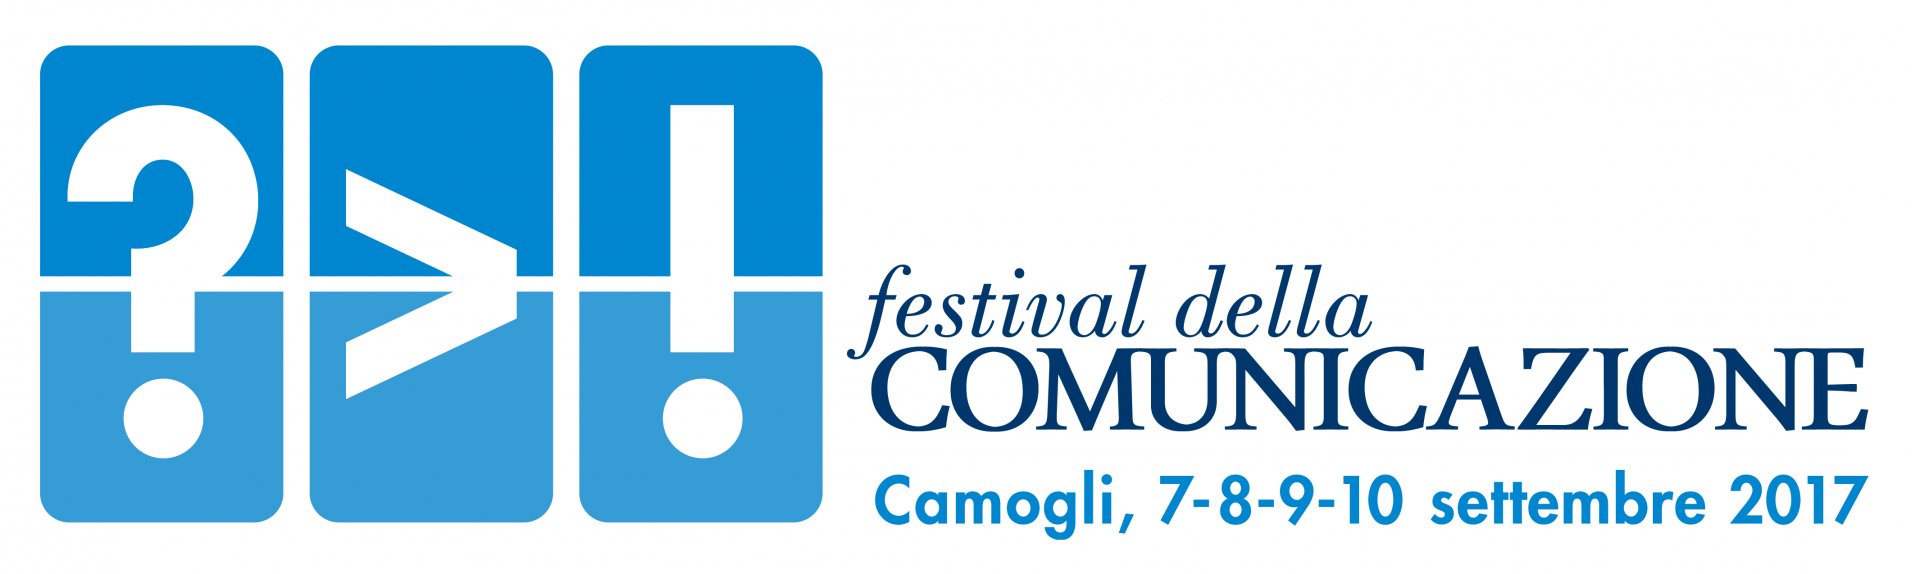 LOGO Festival della Comunicazione Camogli_02